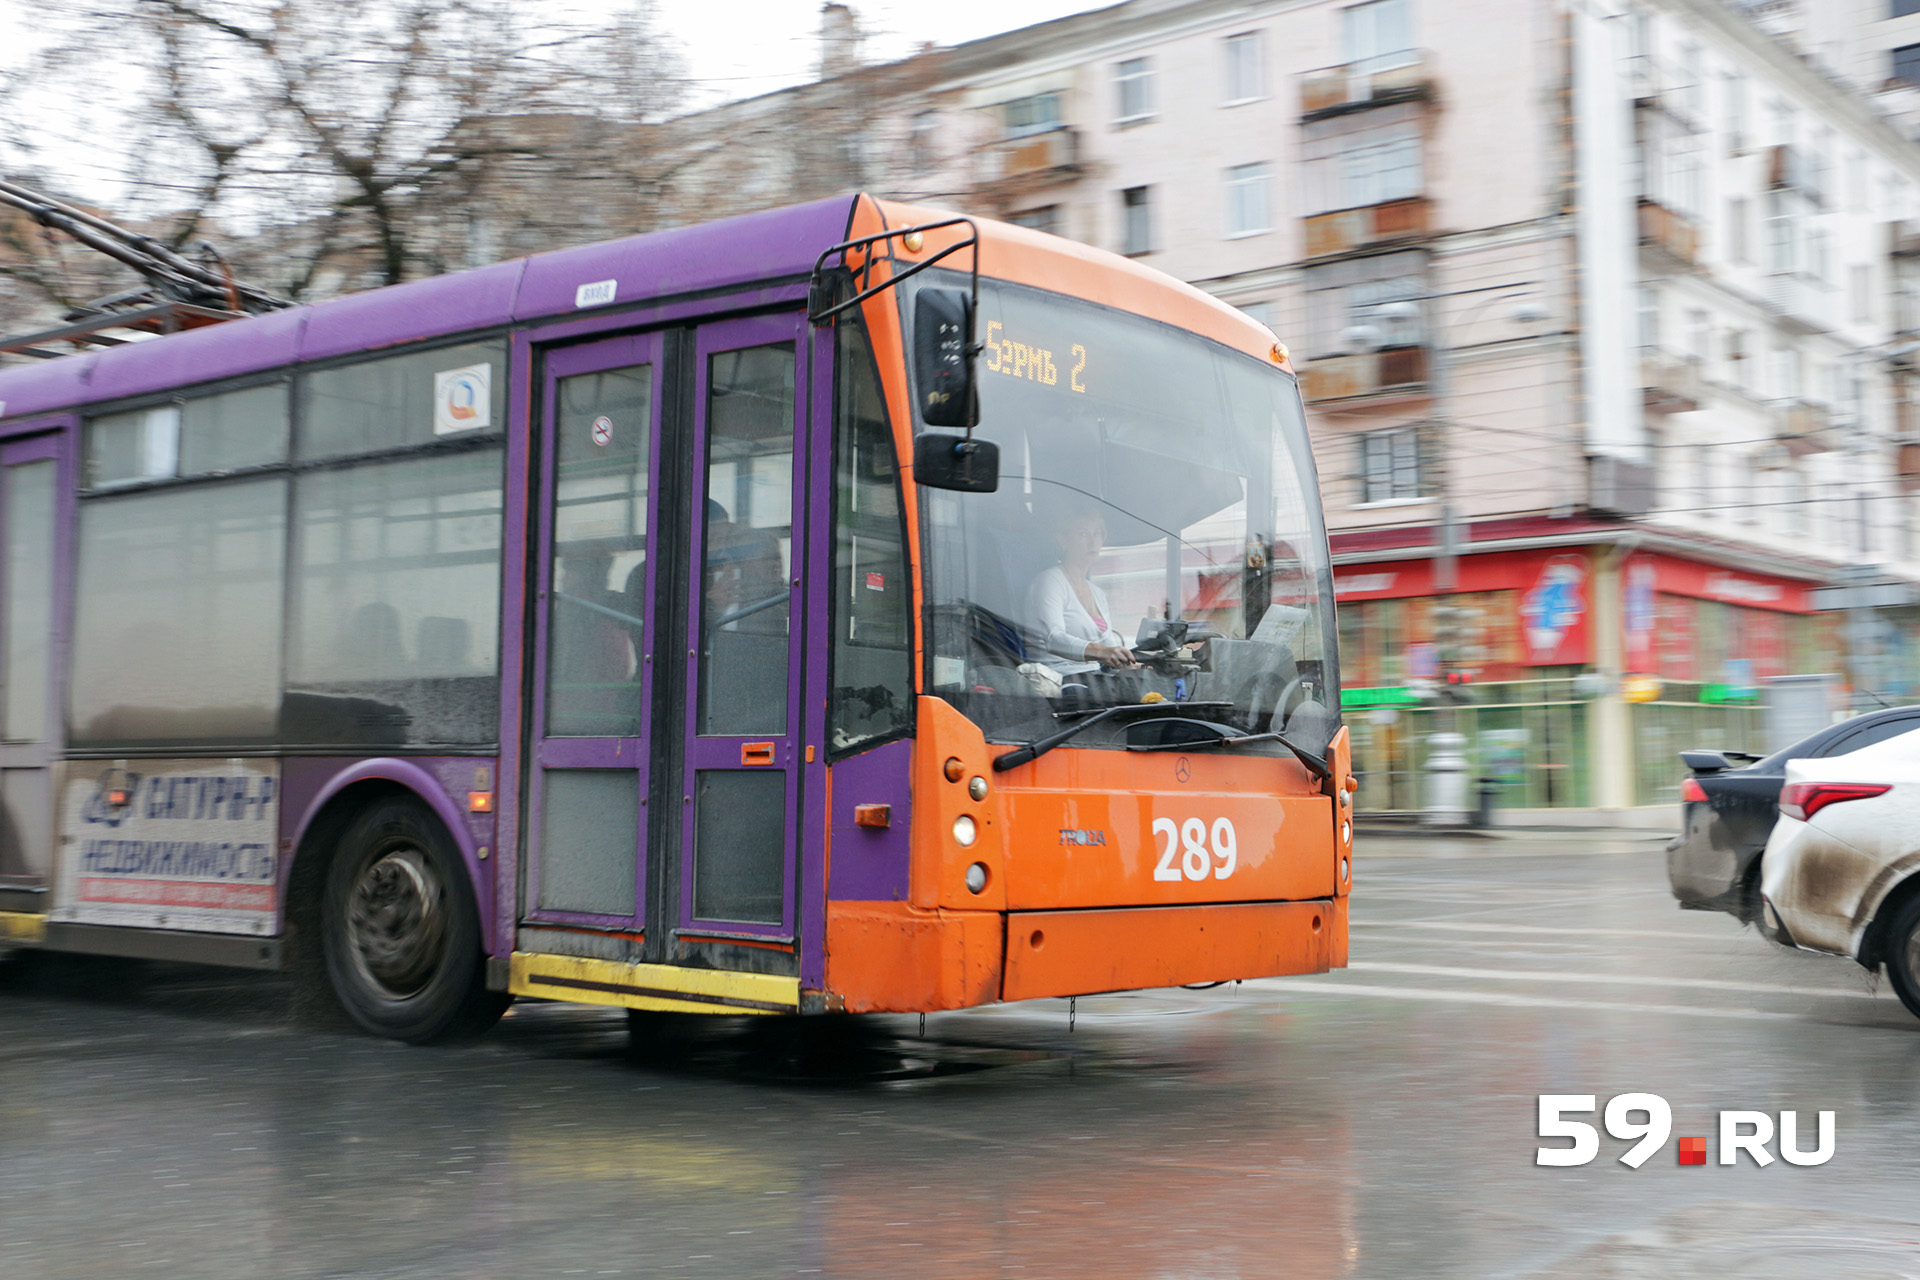 Сейчас в Перми расписание общественного транспорта выполняется более чем на 90%.